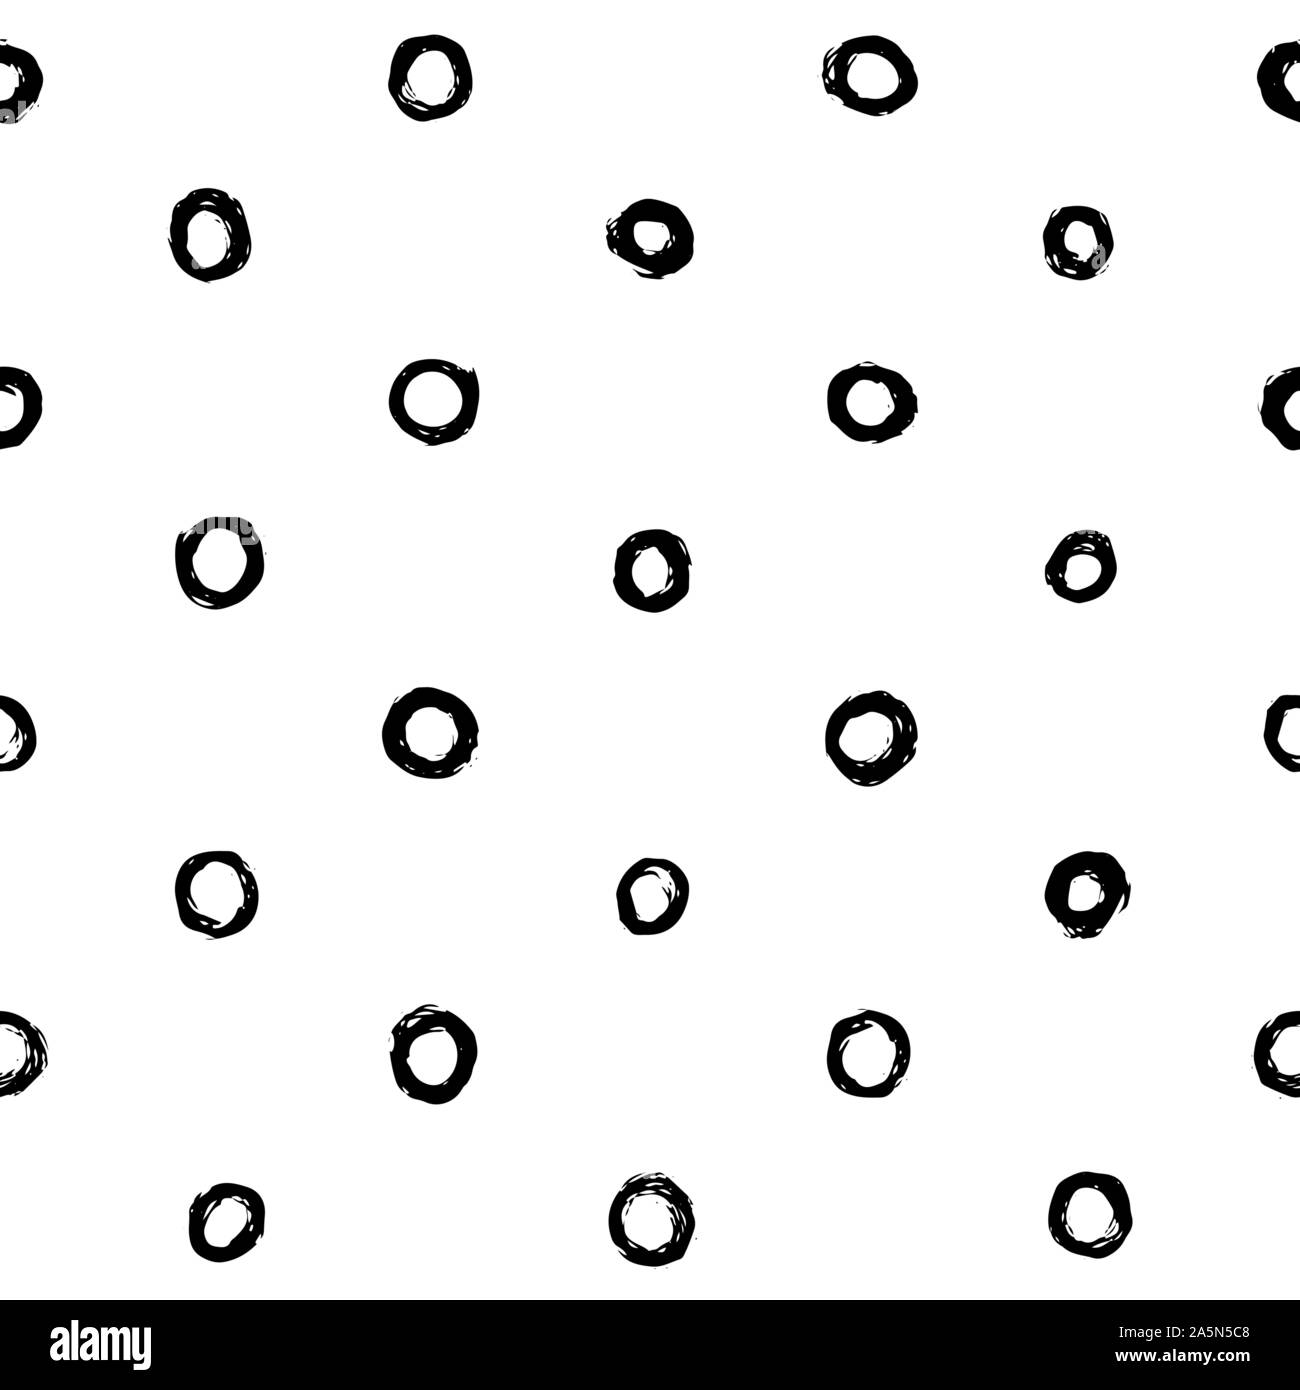 Hand gezeichneten Kreise oder Ringe nahtlose Muster in Schwarz und Weiß. Perfekt für Verpackung Papier, Textil-, Gewebe- und Hintergründe. Vektor Polka Dot Pattern. Stock Vektor